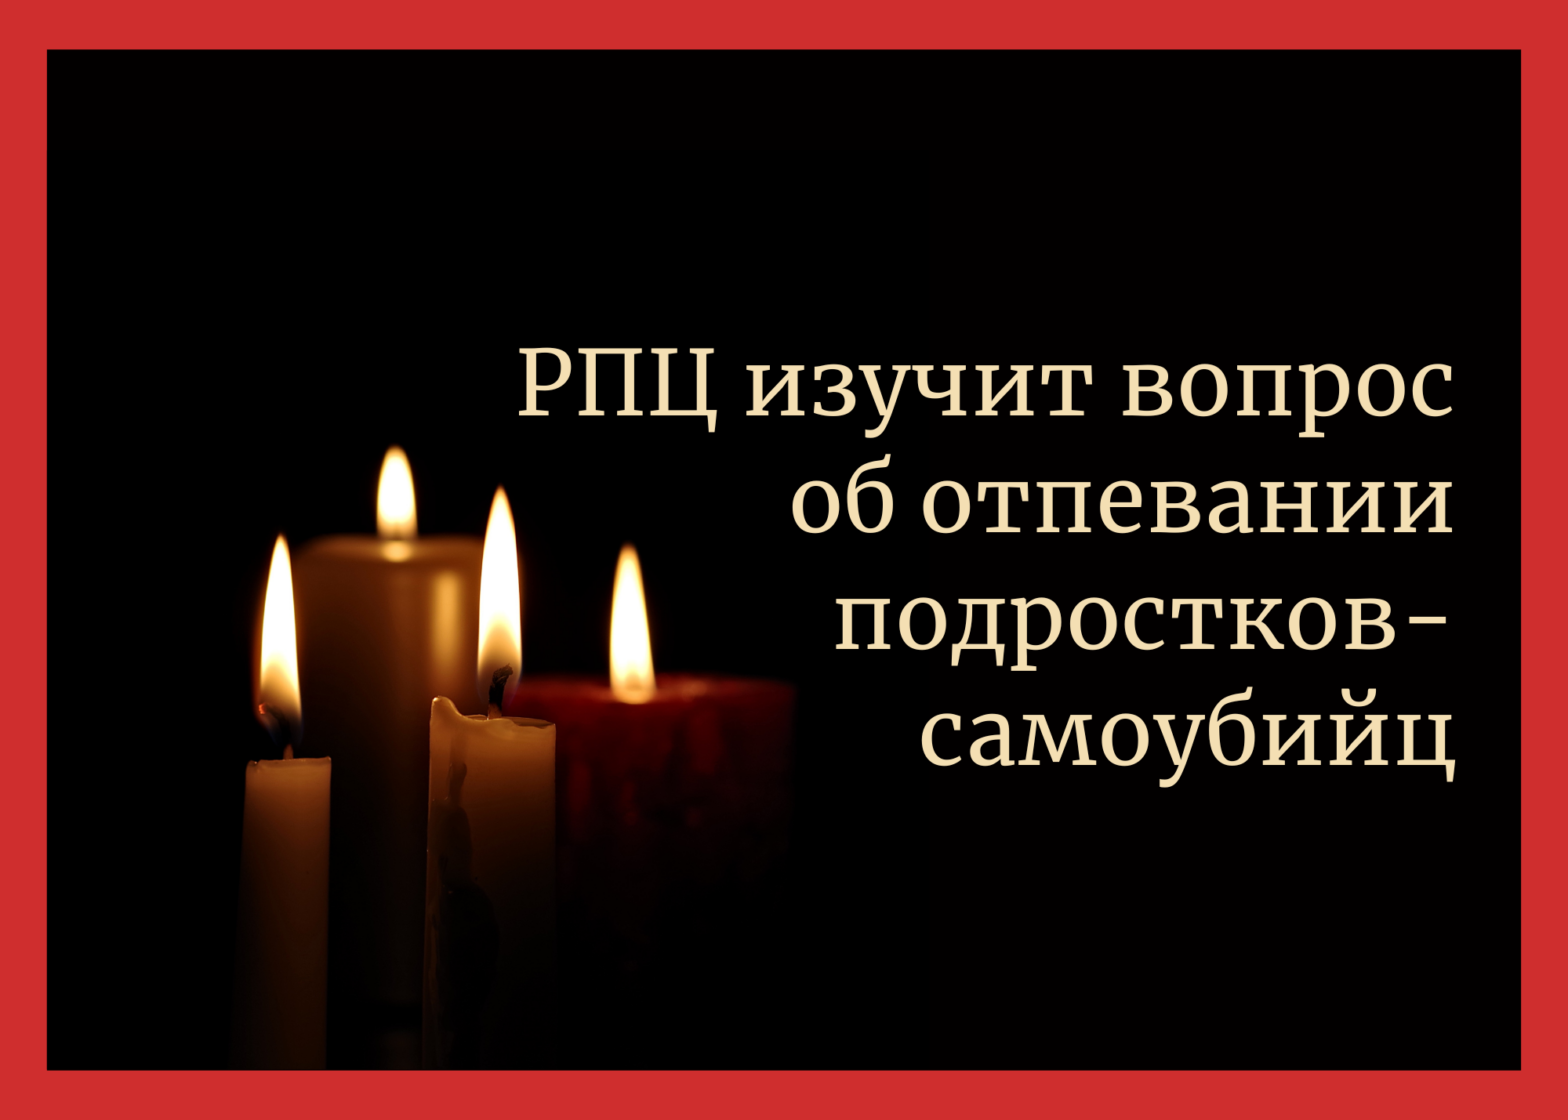 В Русской православной церкви пообещали изучить вопрос об отпевании подростков-самоубийц